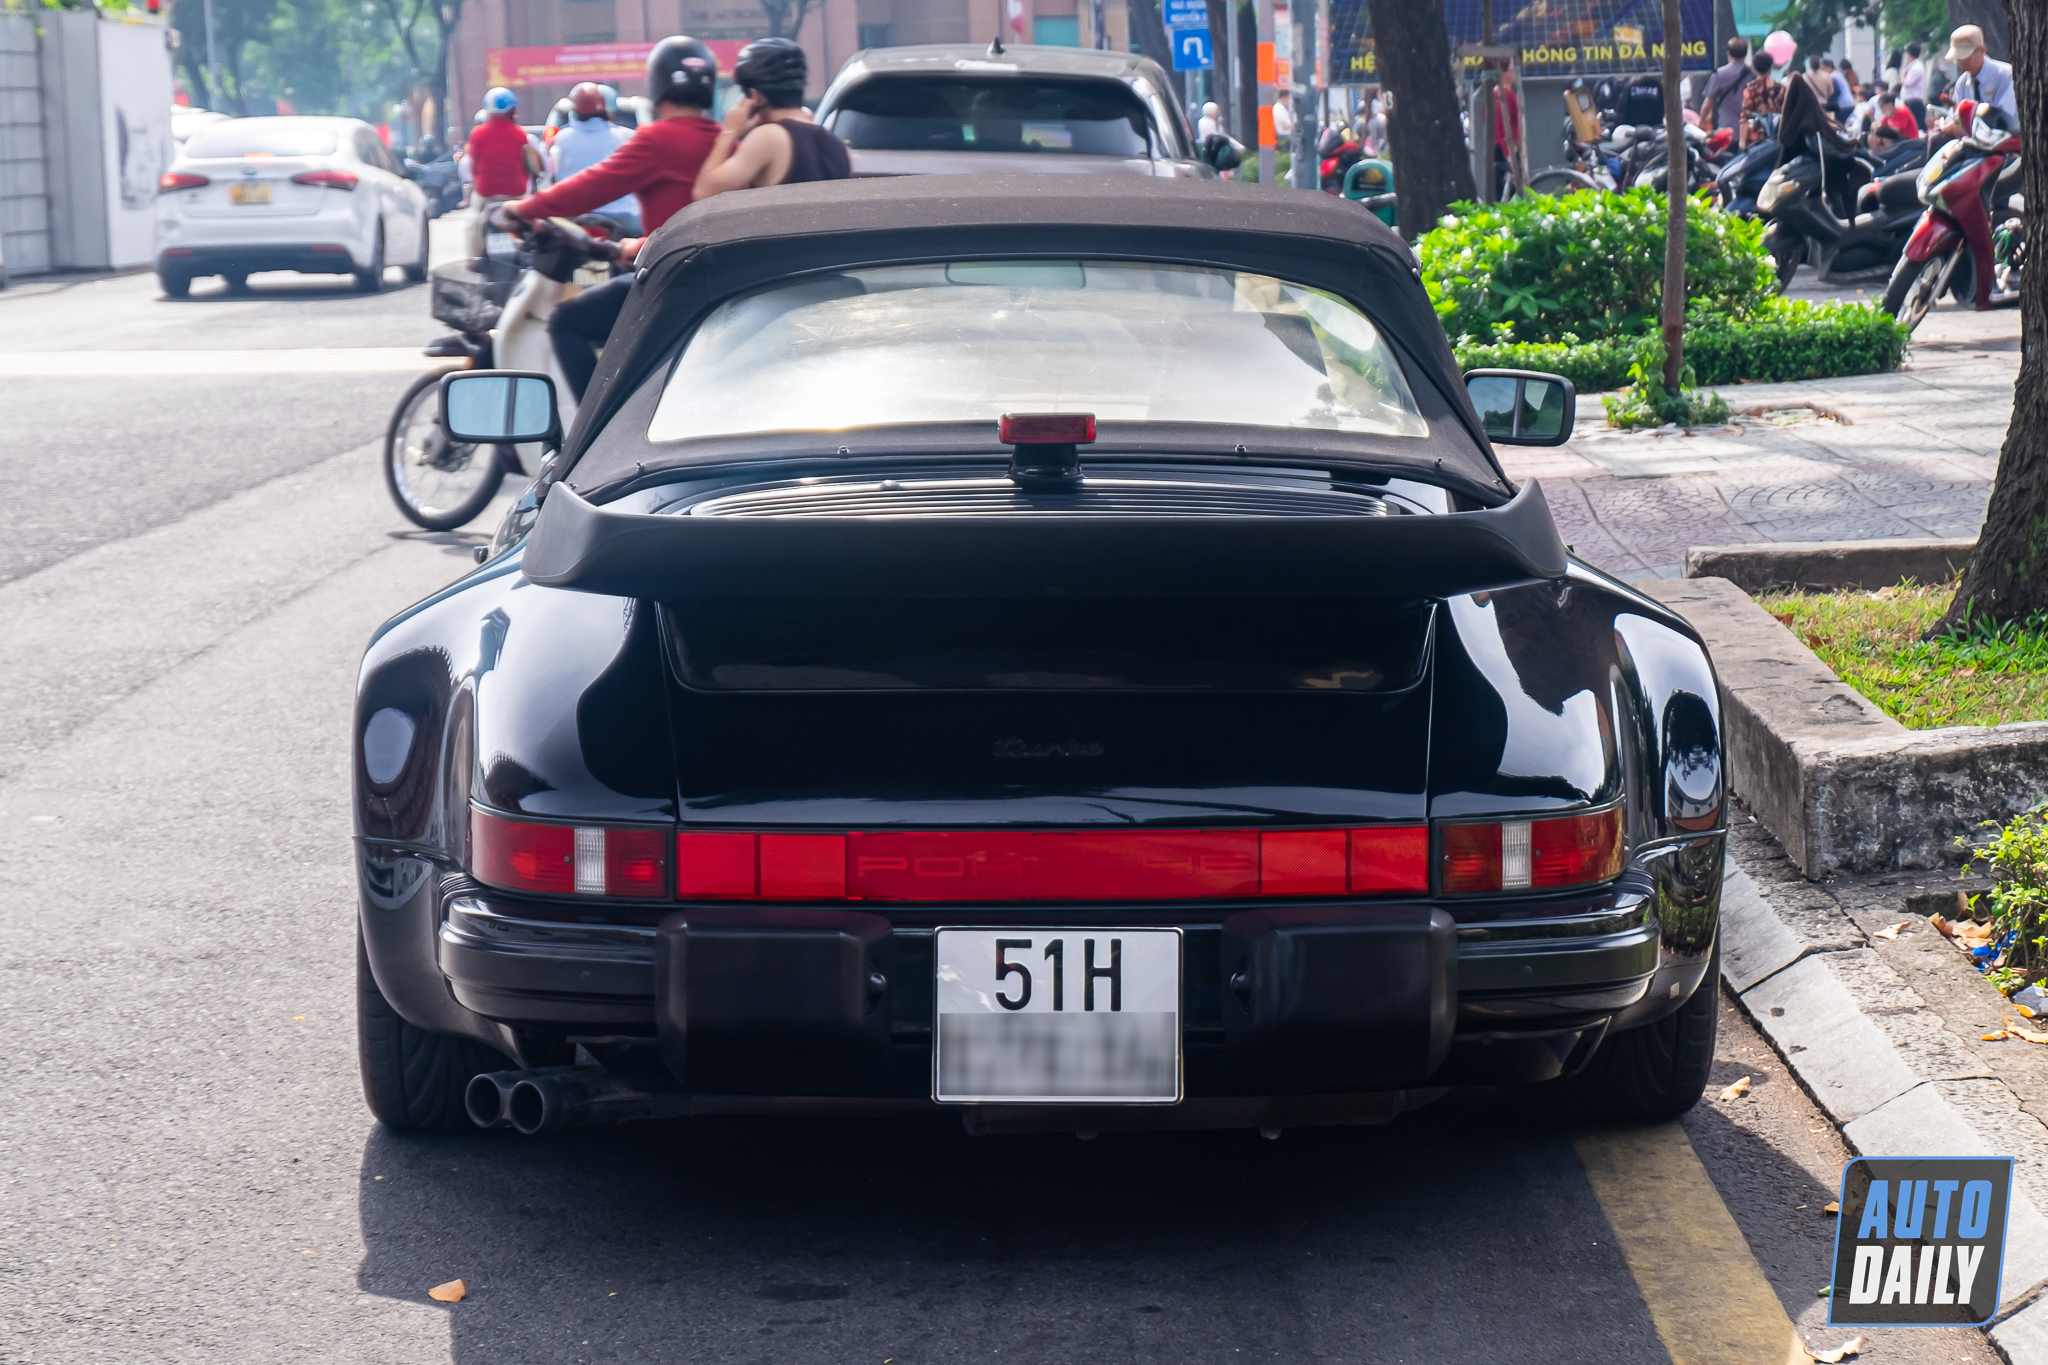 Ngắm Porsche 930 Turbo Cabriolet tuổi đời hơn 30 năm duy nhất Việt Nam porsche-930-turbo-autodaily-8.JPG